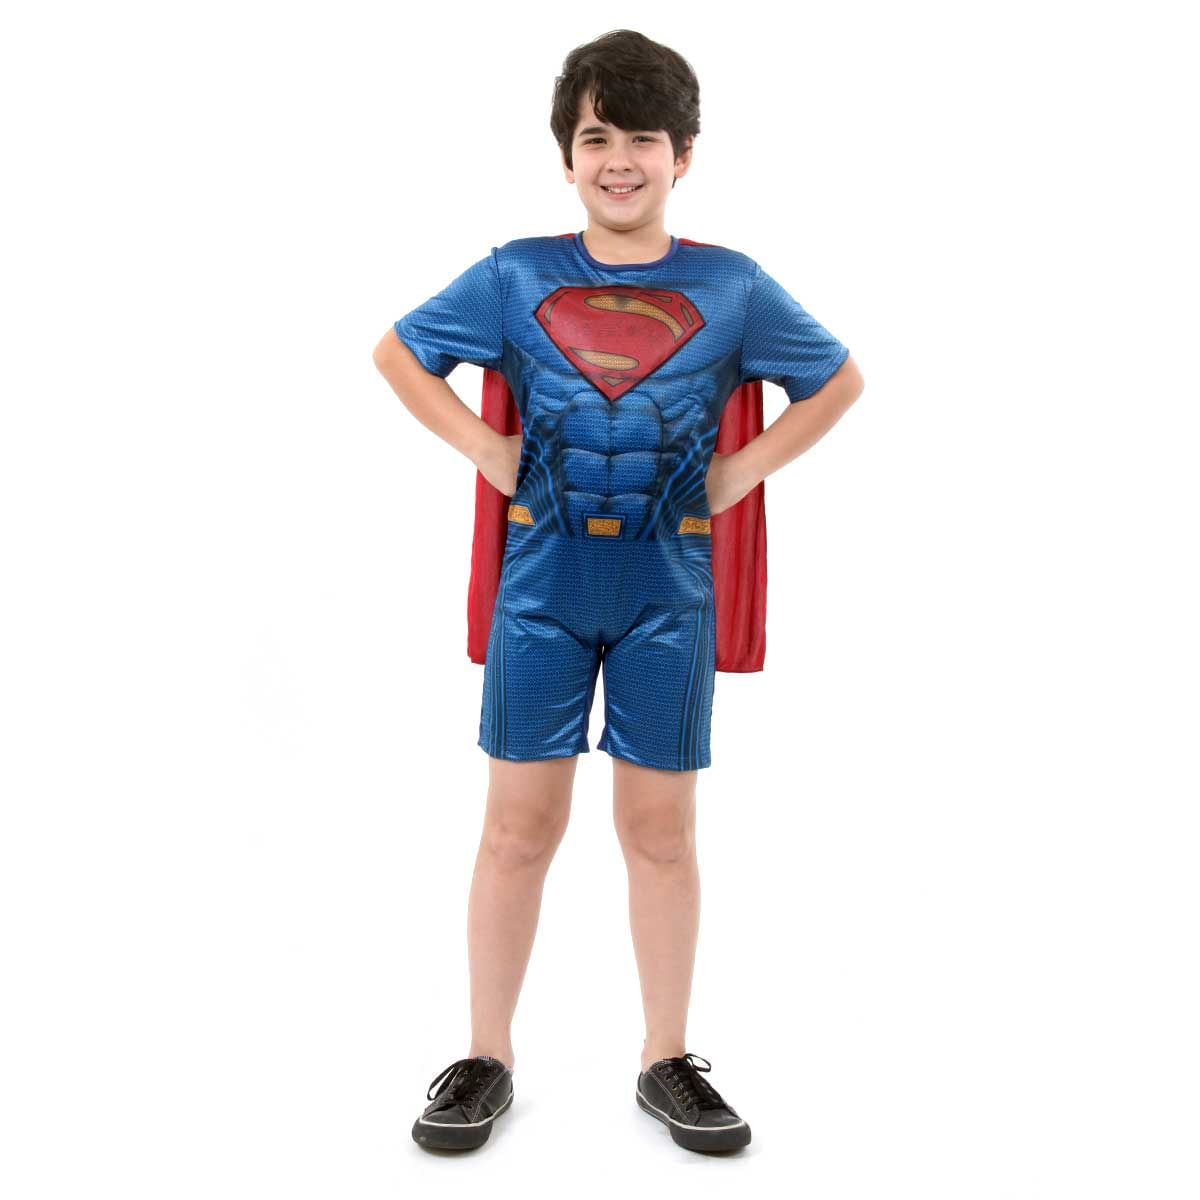 Fantasia Super Homem Infantil Curto com Musculatura - Liga da Justiça P